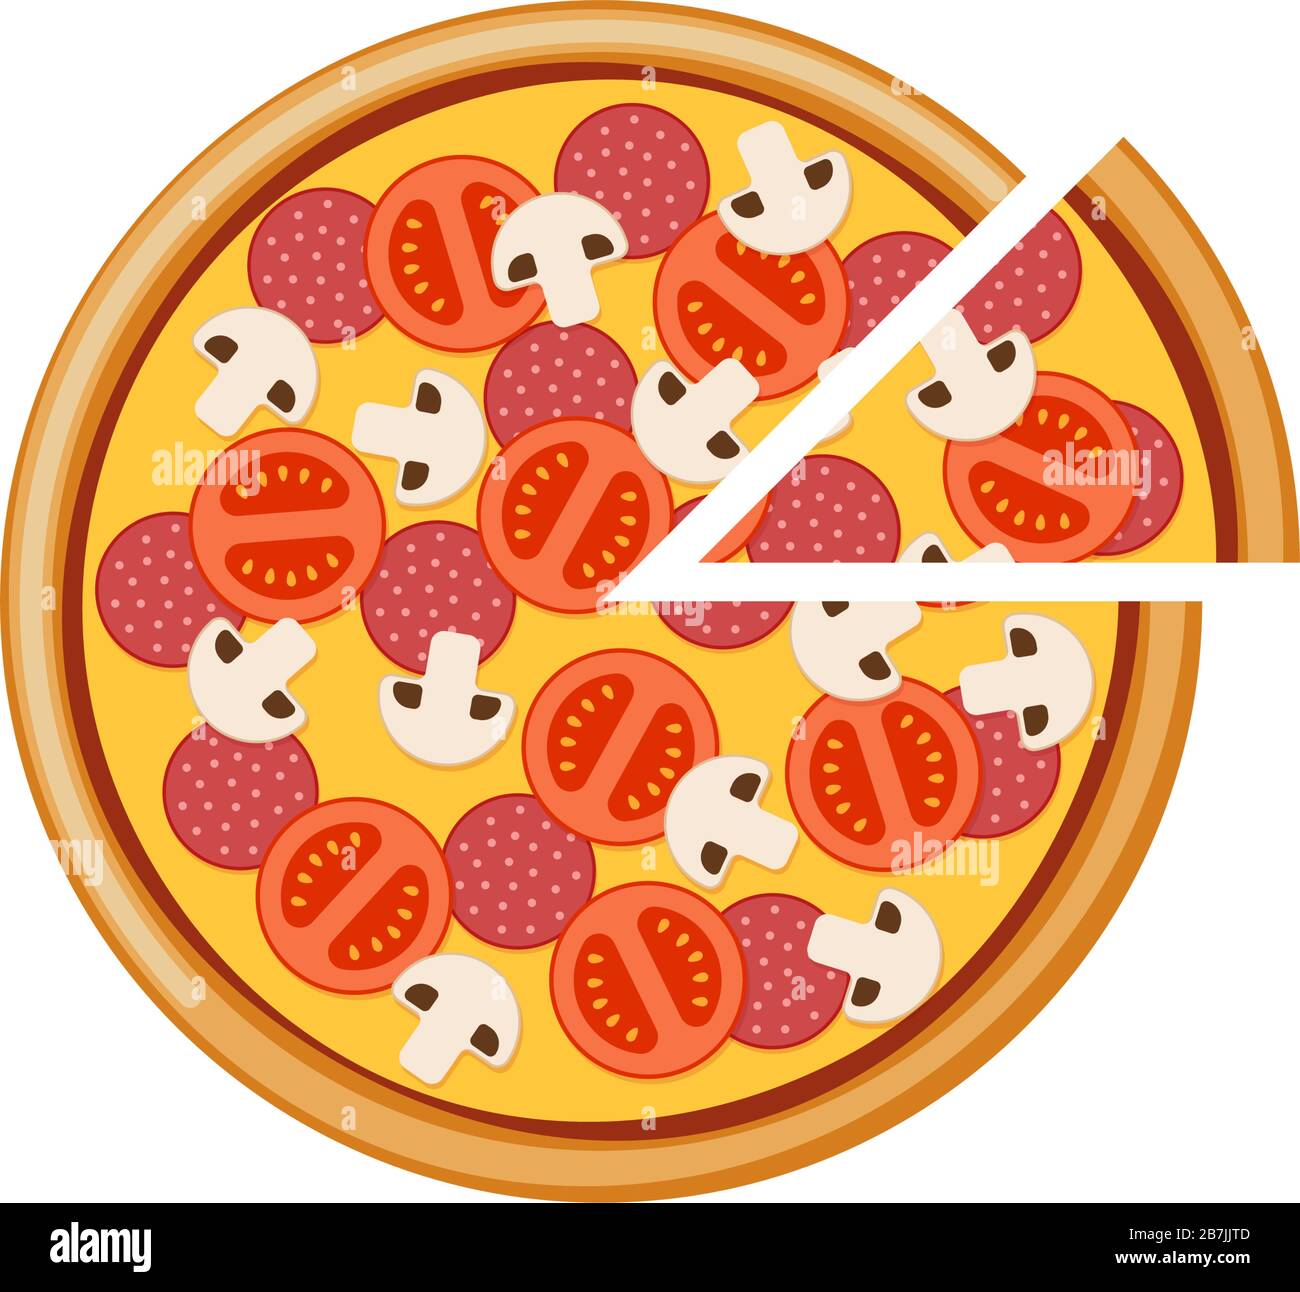 Pizza aux champignons de tomate salami et tranches de fromage. Illustration des eps vectorielles plates isolées des repas Fast-food italiens Illustration de Vecteur